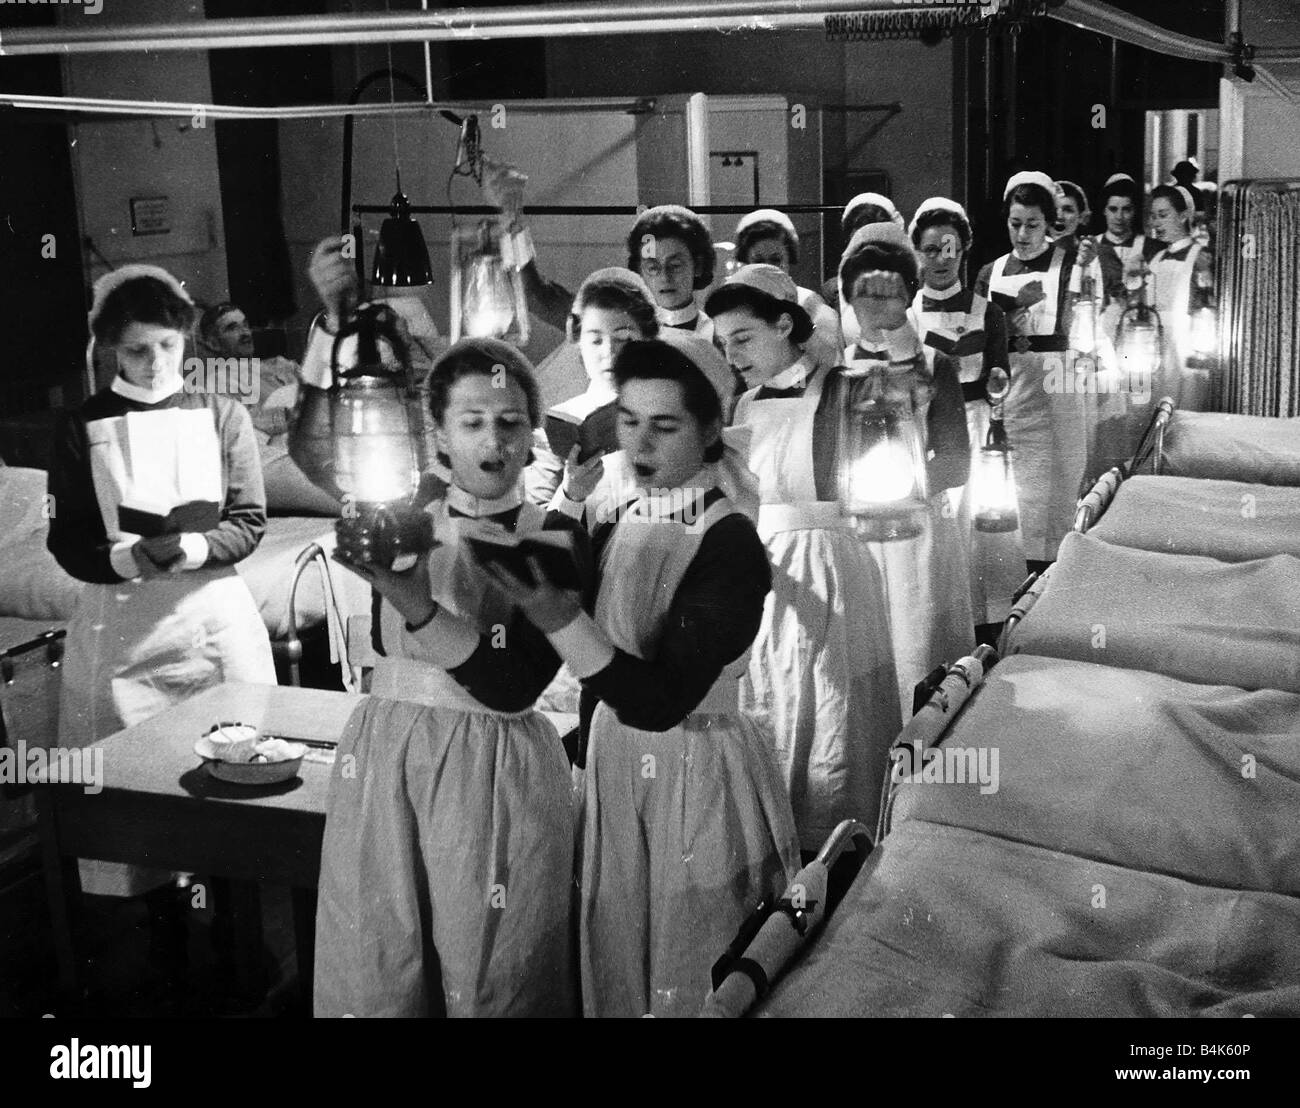 Las Enfermeras Cantar Villancicos En Nochebuena A Los Pacientes Hospitalizados En Las Salas De